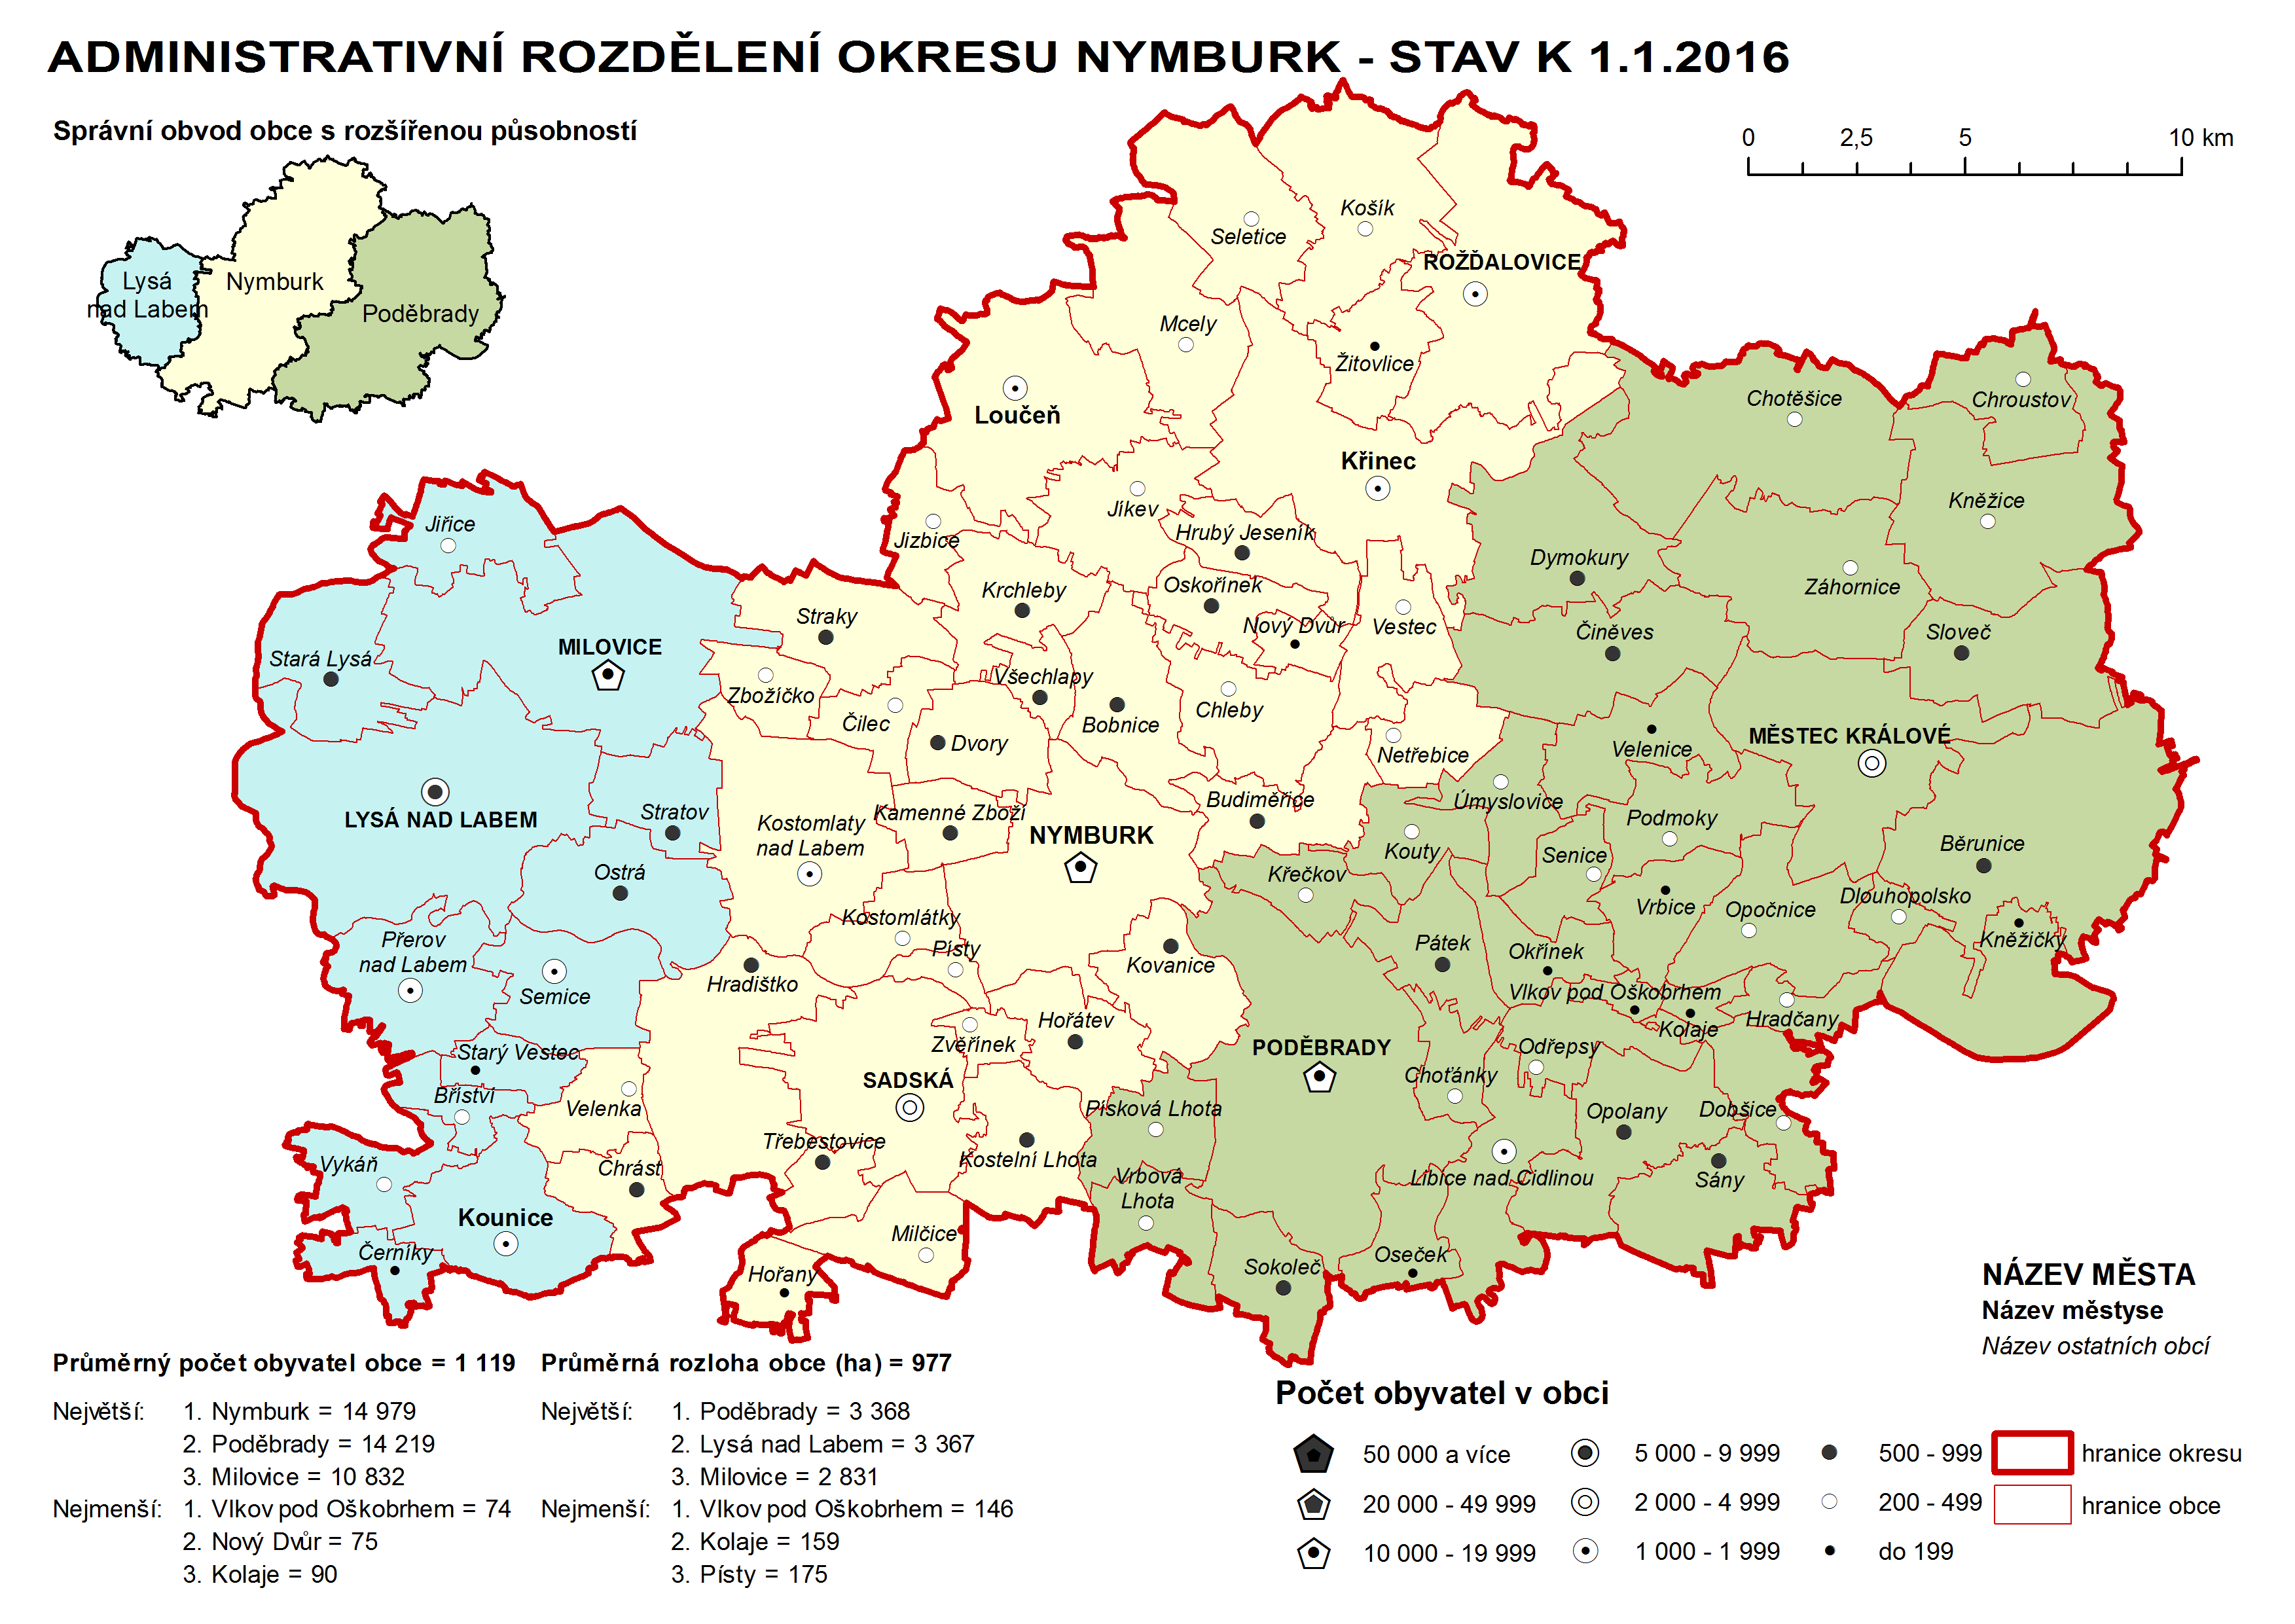 Administrativní rozdělení okresu Nymburk k 1.1.2016